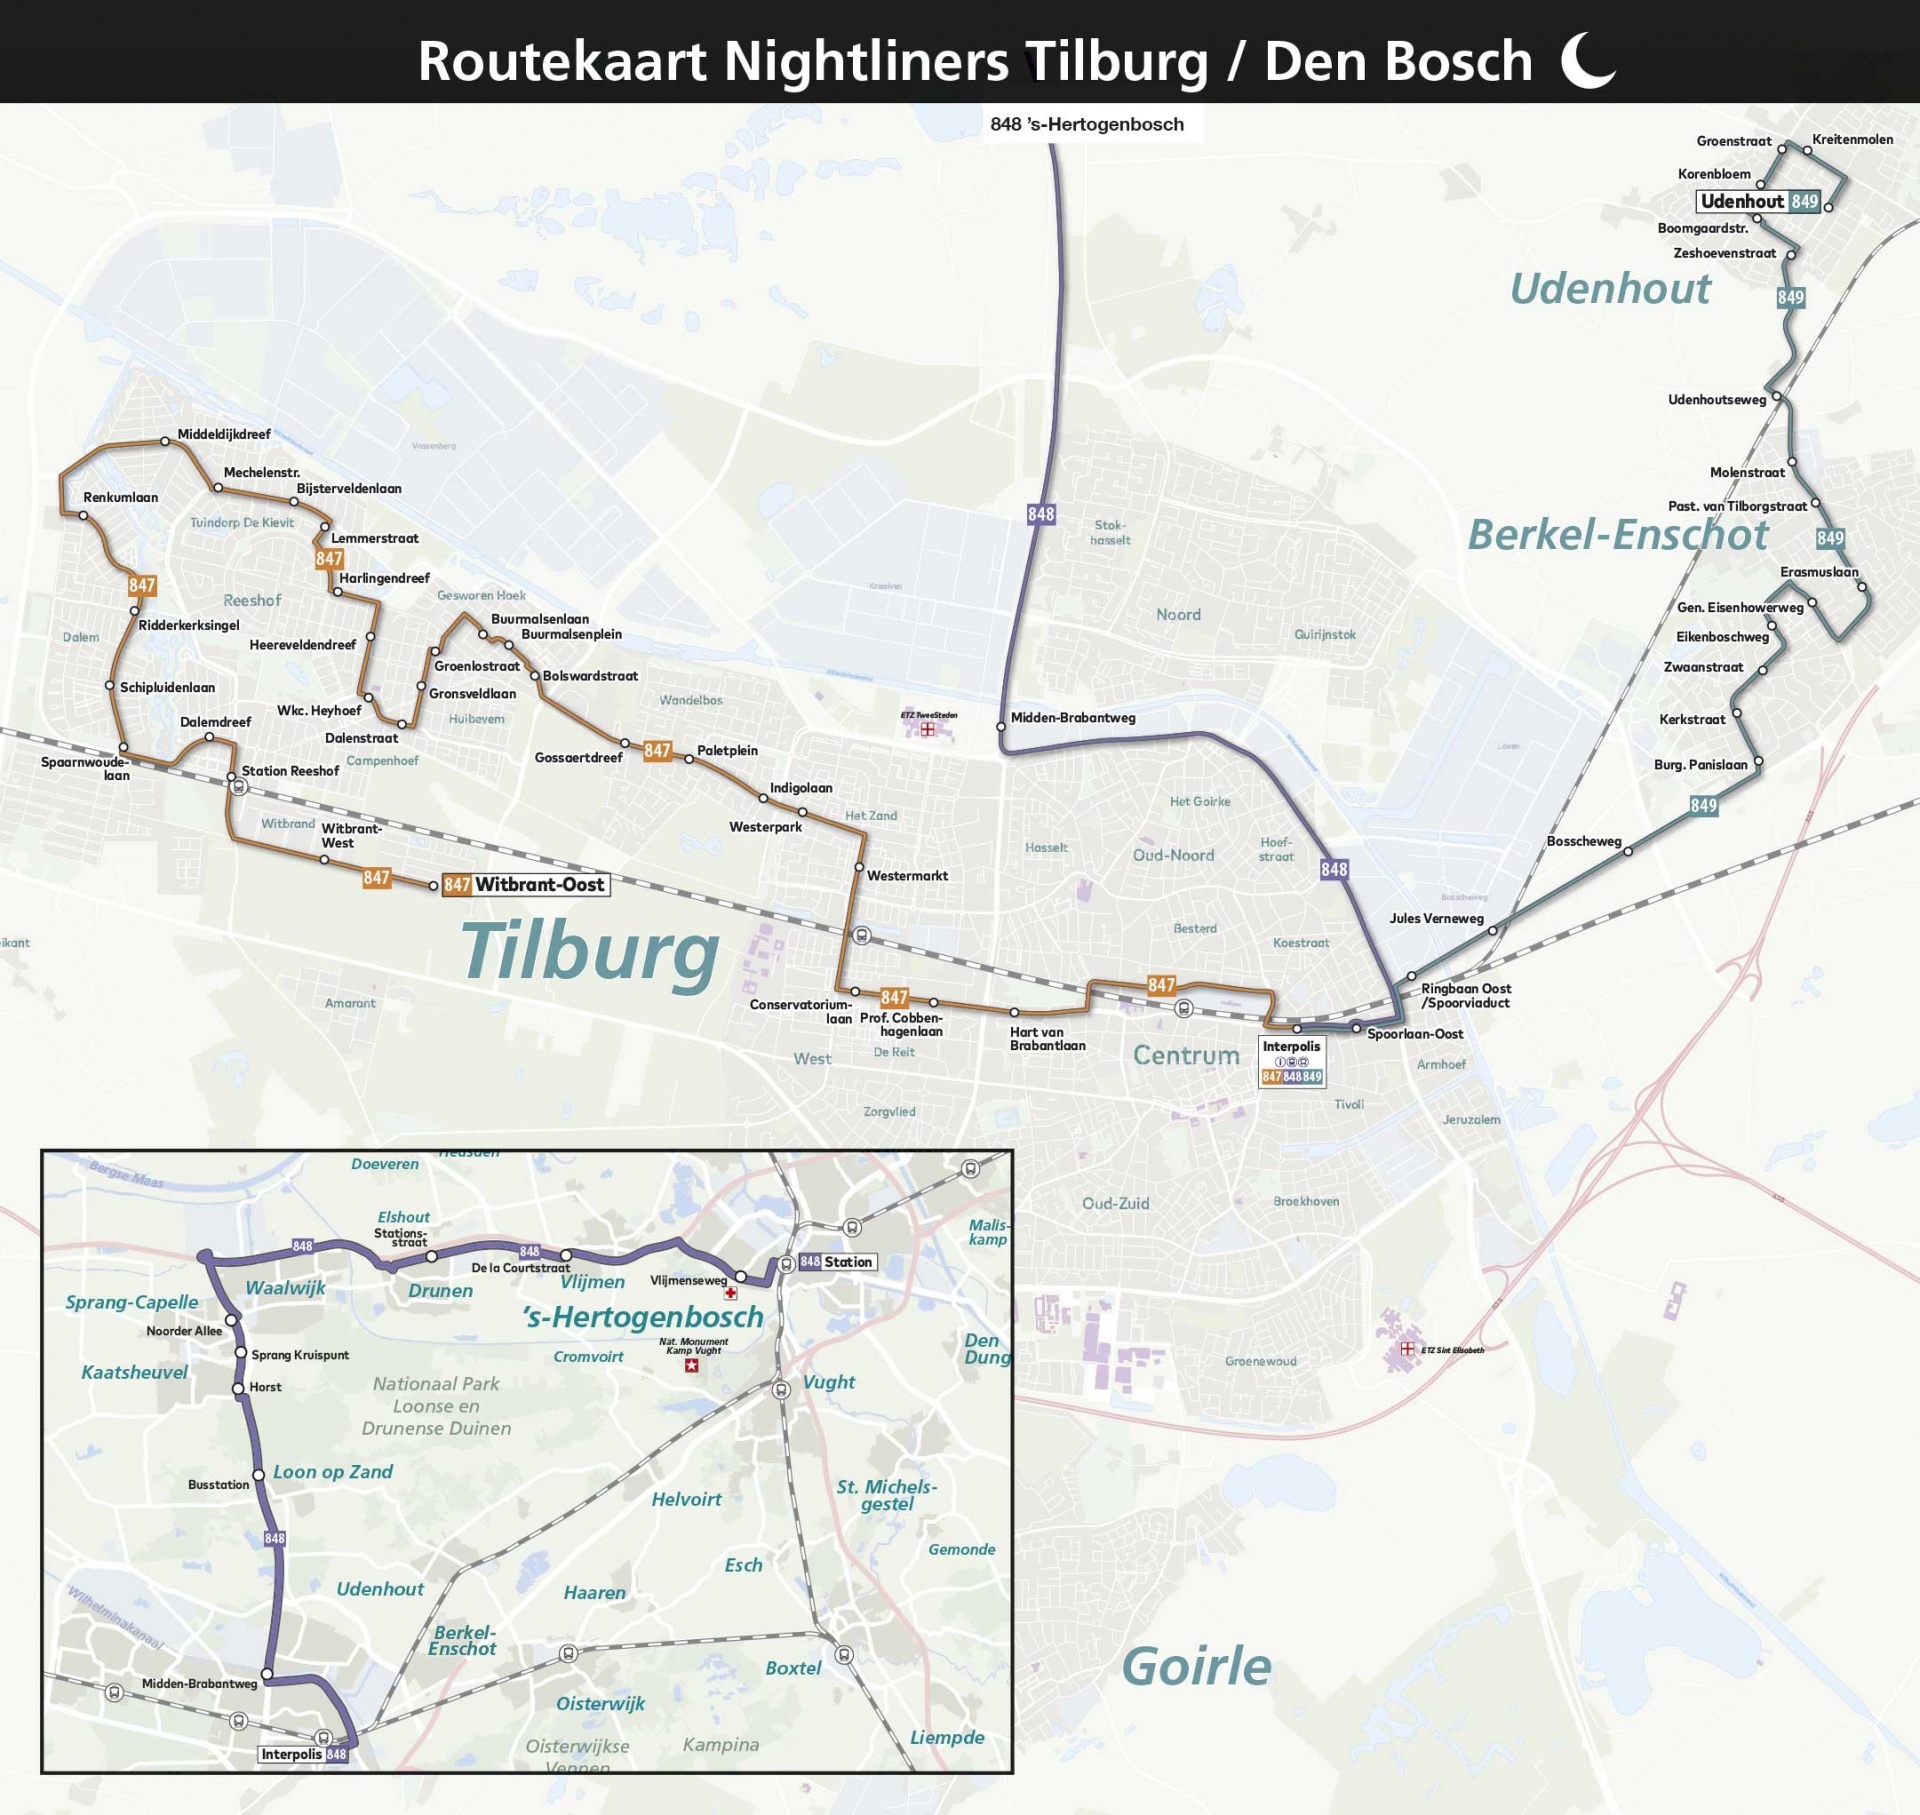 Routekaart Nightliners Tilburg - Den Bosch 